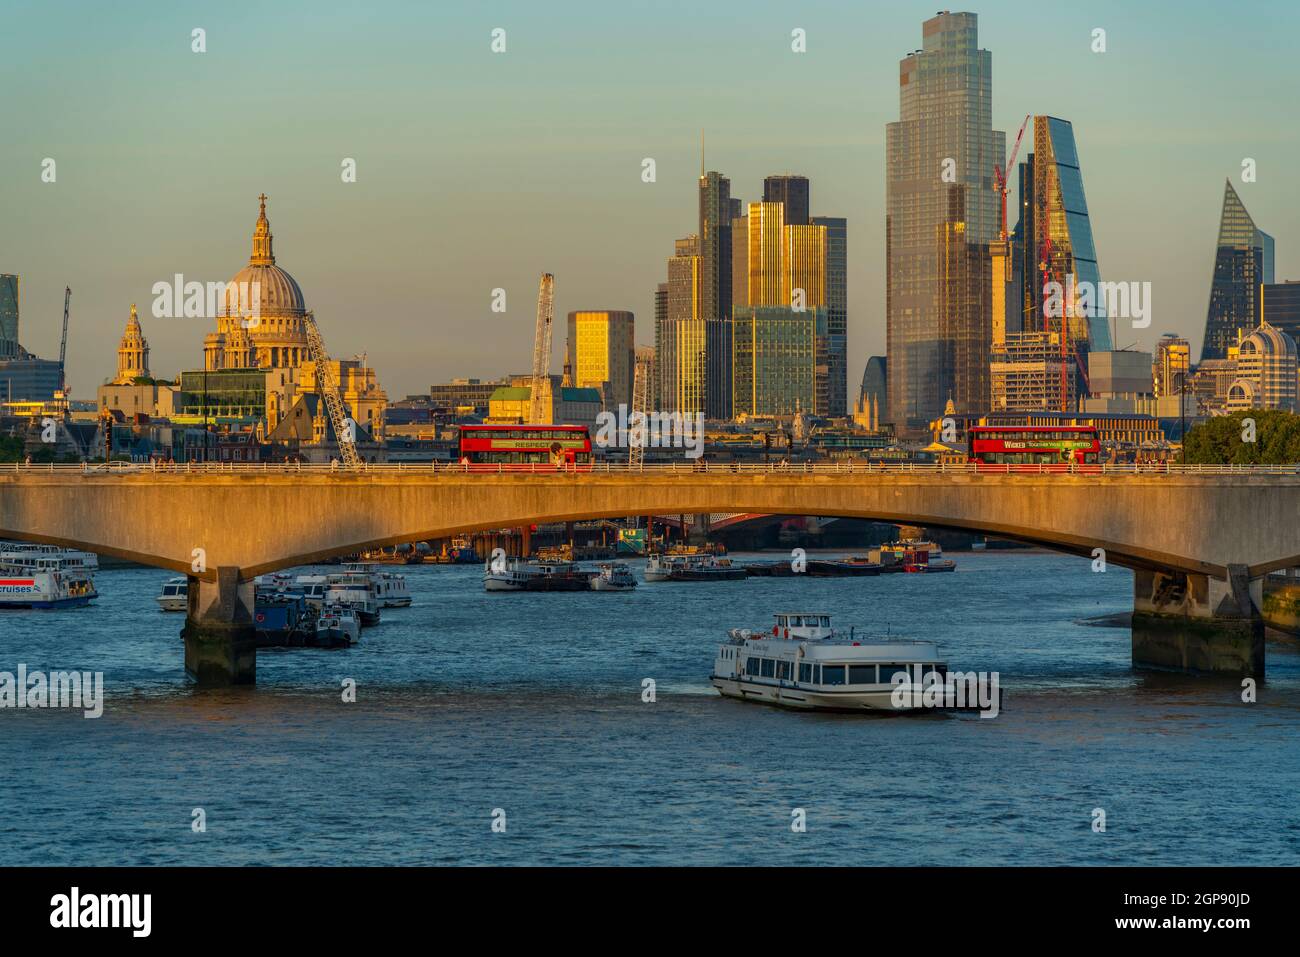 Vista degli autobus rossi sul Ponte di Waterloo, la Cattedrale di St Paul e lo skyline della città al tramonto, Londra, Inghilterra, Regno Unito, Europa Foto Stock